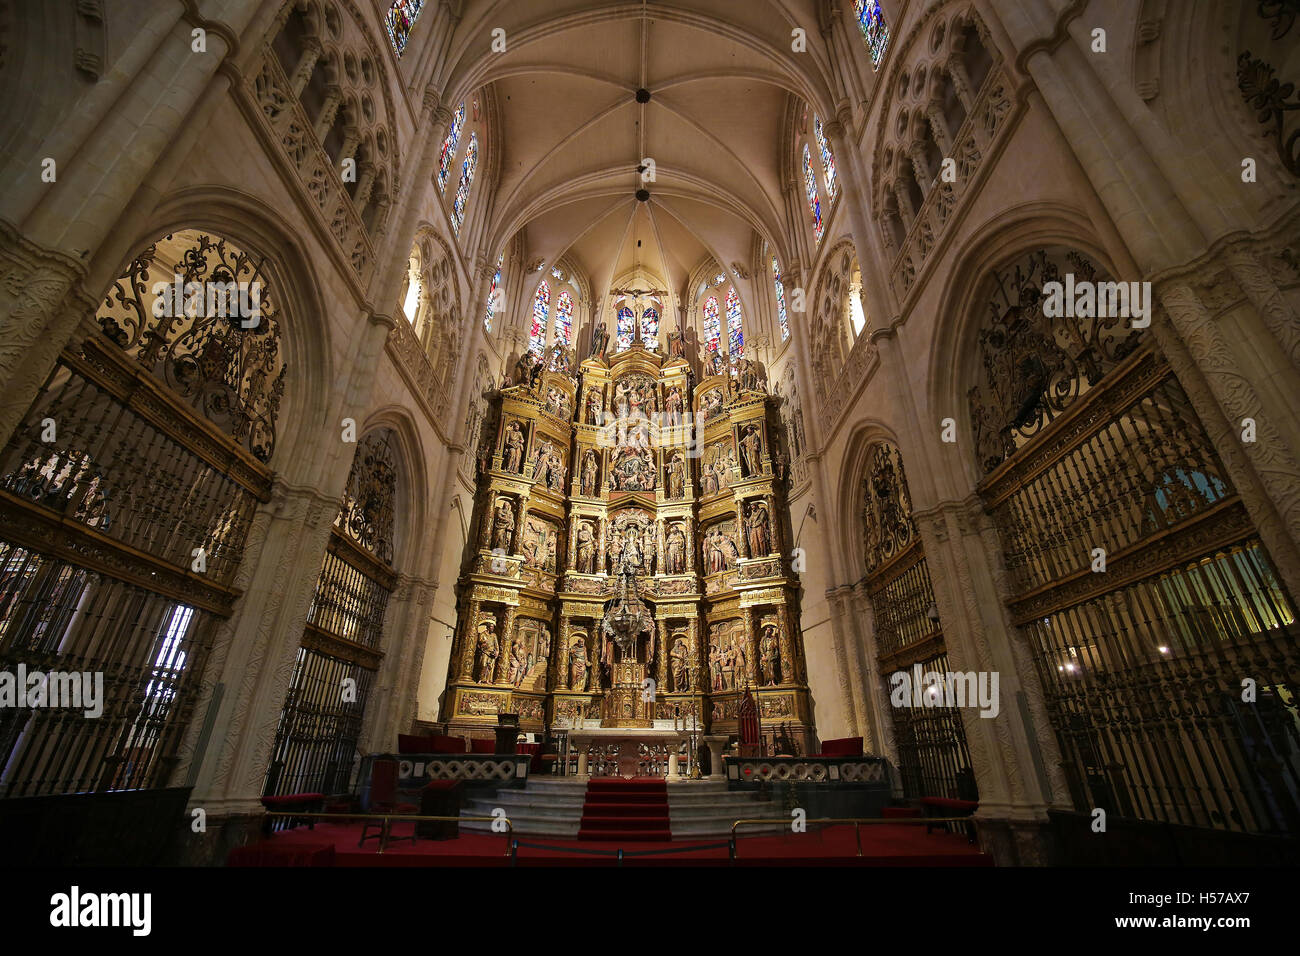 Altarbild in der Hauptkapelle der Kathedrale von Burgos, Kastilien, Spanien. Stockfoto